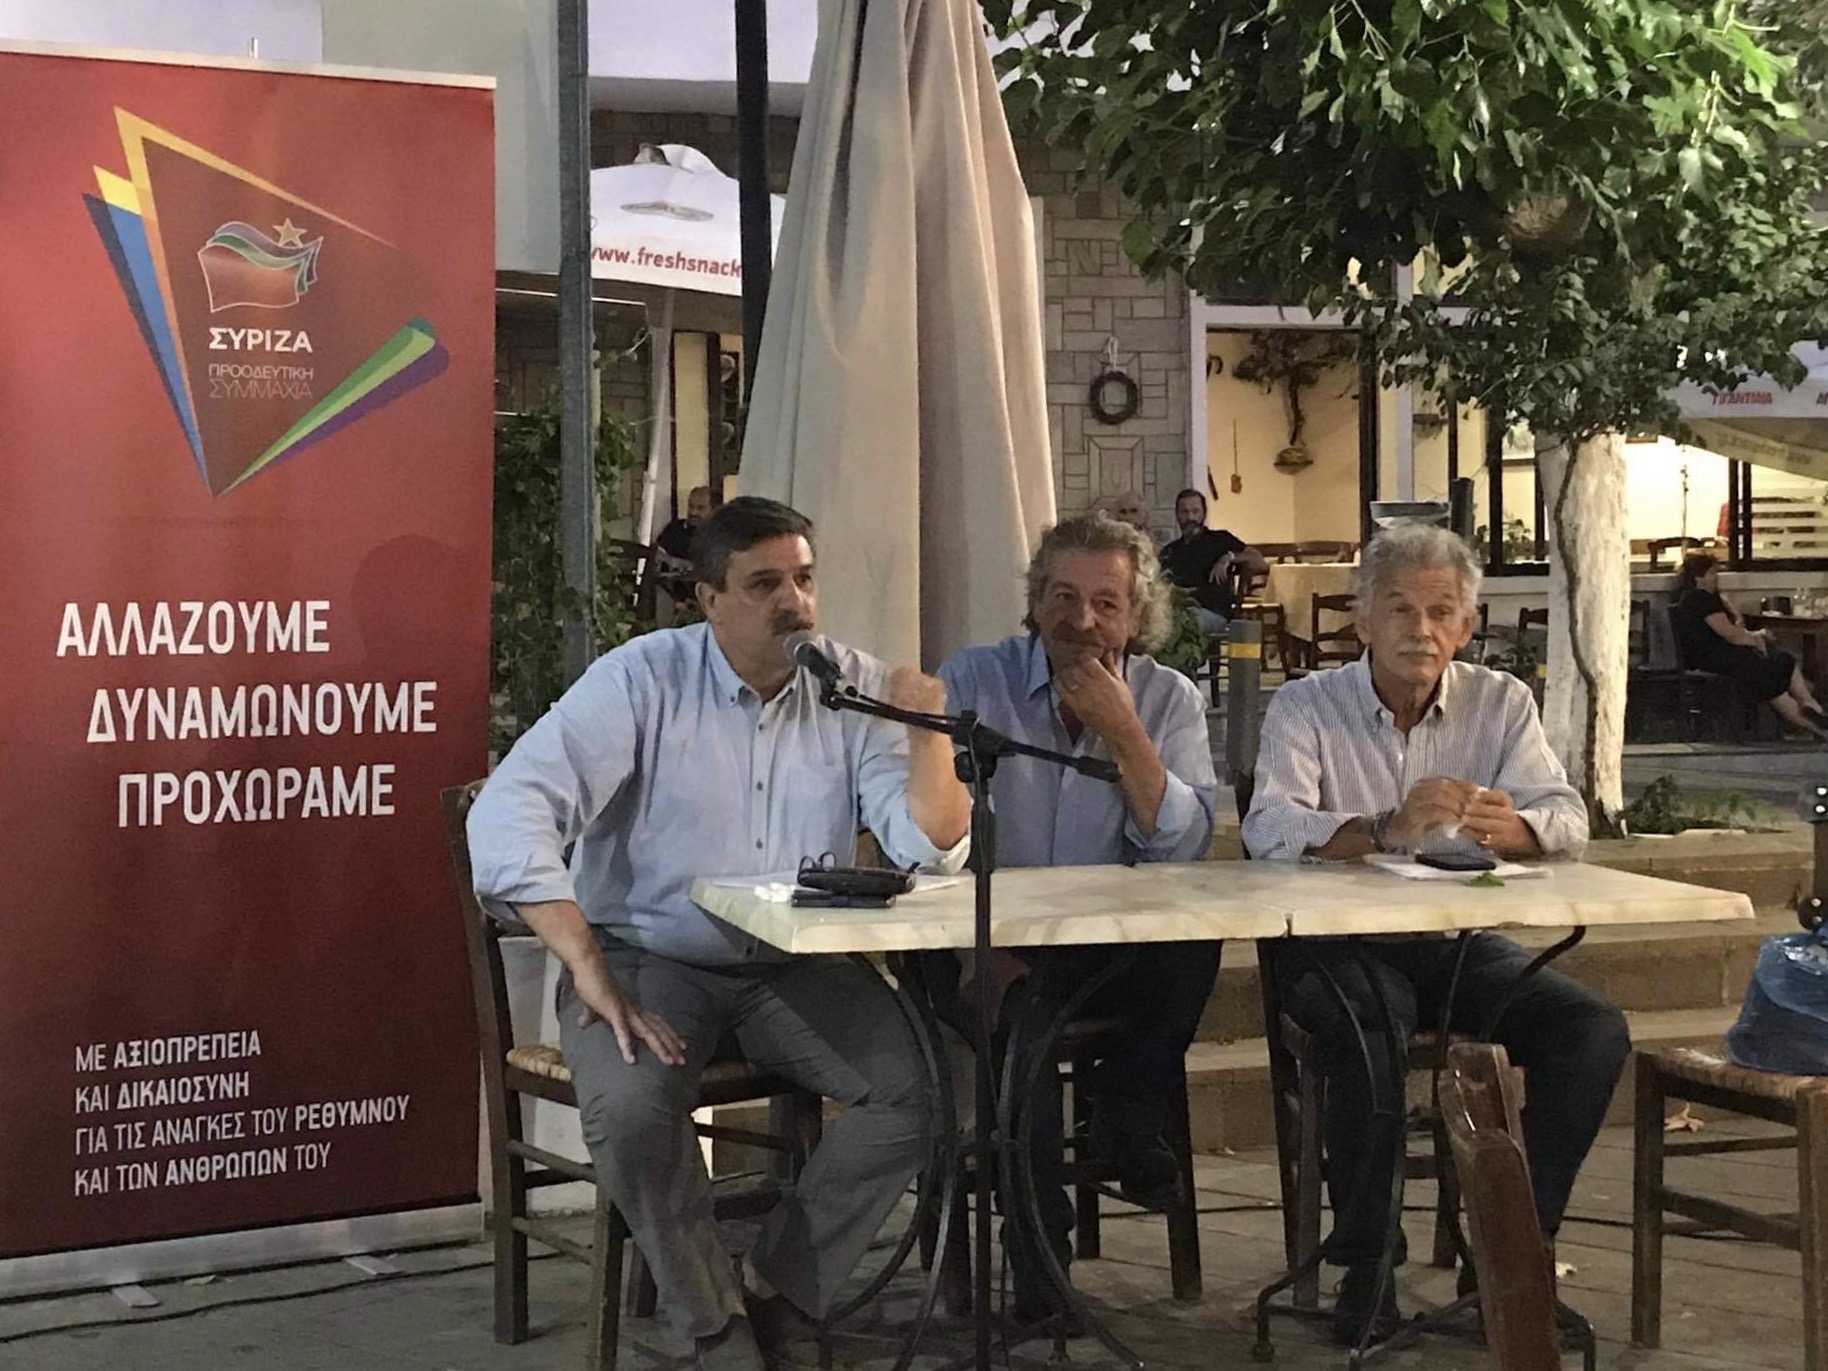 Εκδήλωση του ΣΥΡΙΖΑ-Προοδευτική Συμμαχία στα Ανώγεια με ομιλητές τον Ανδρέα Ξανθό και τον Σπύρο Δανέλλη